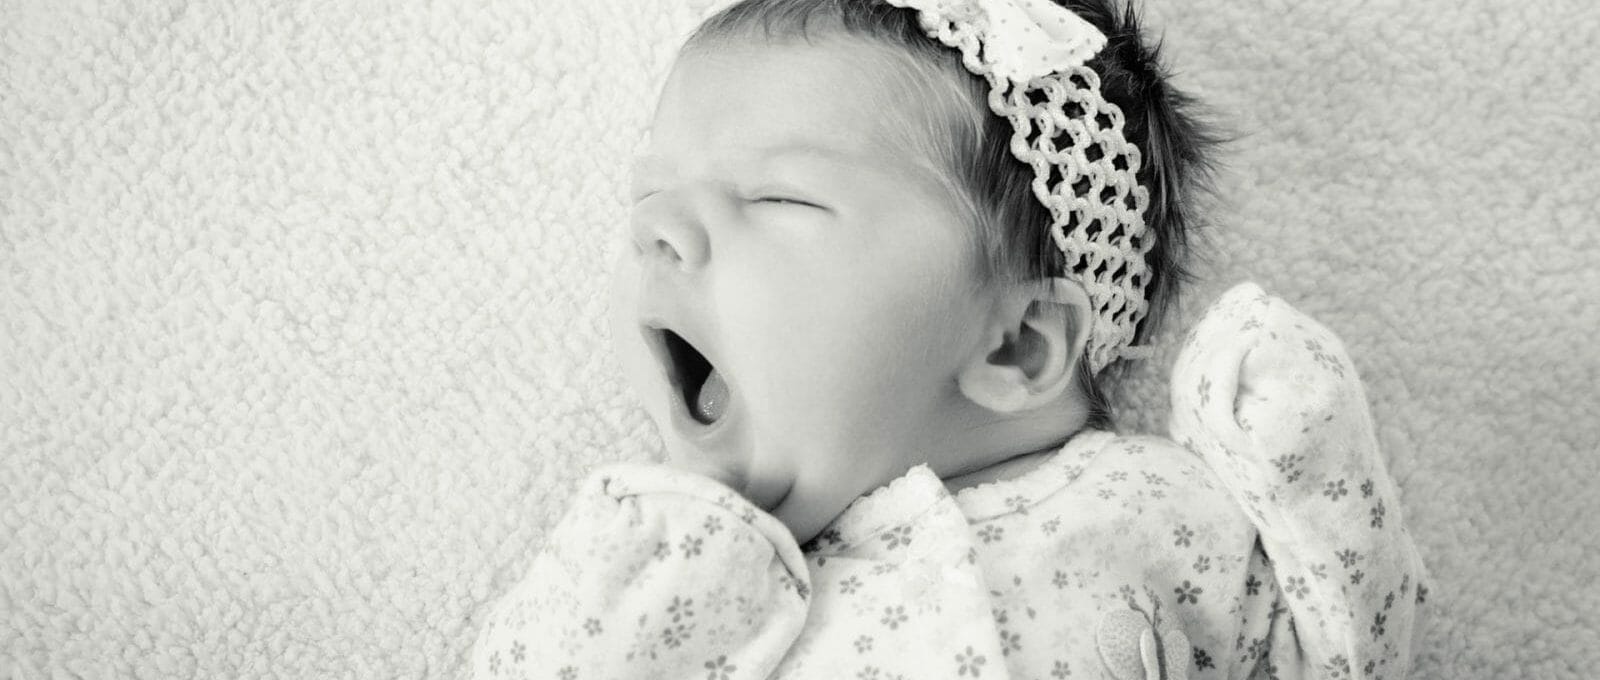 foto preta e branca de bebê dormindo no berço e bocejando